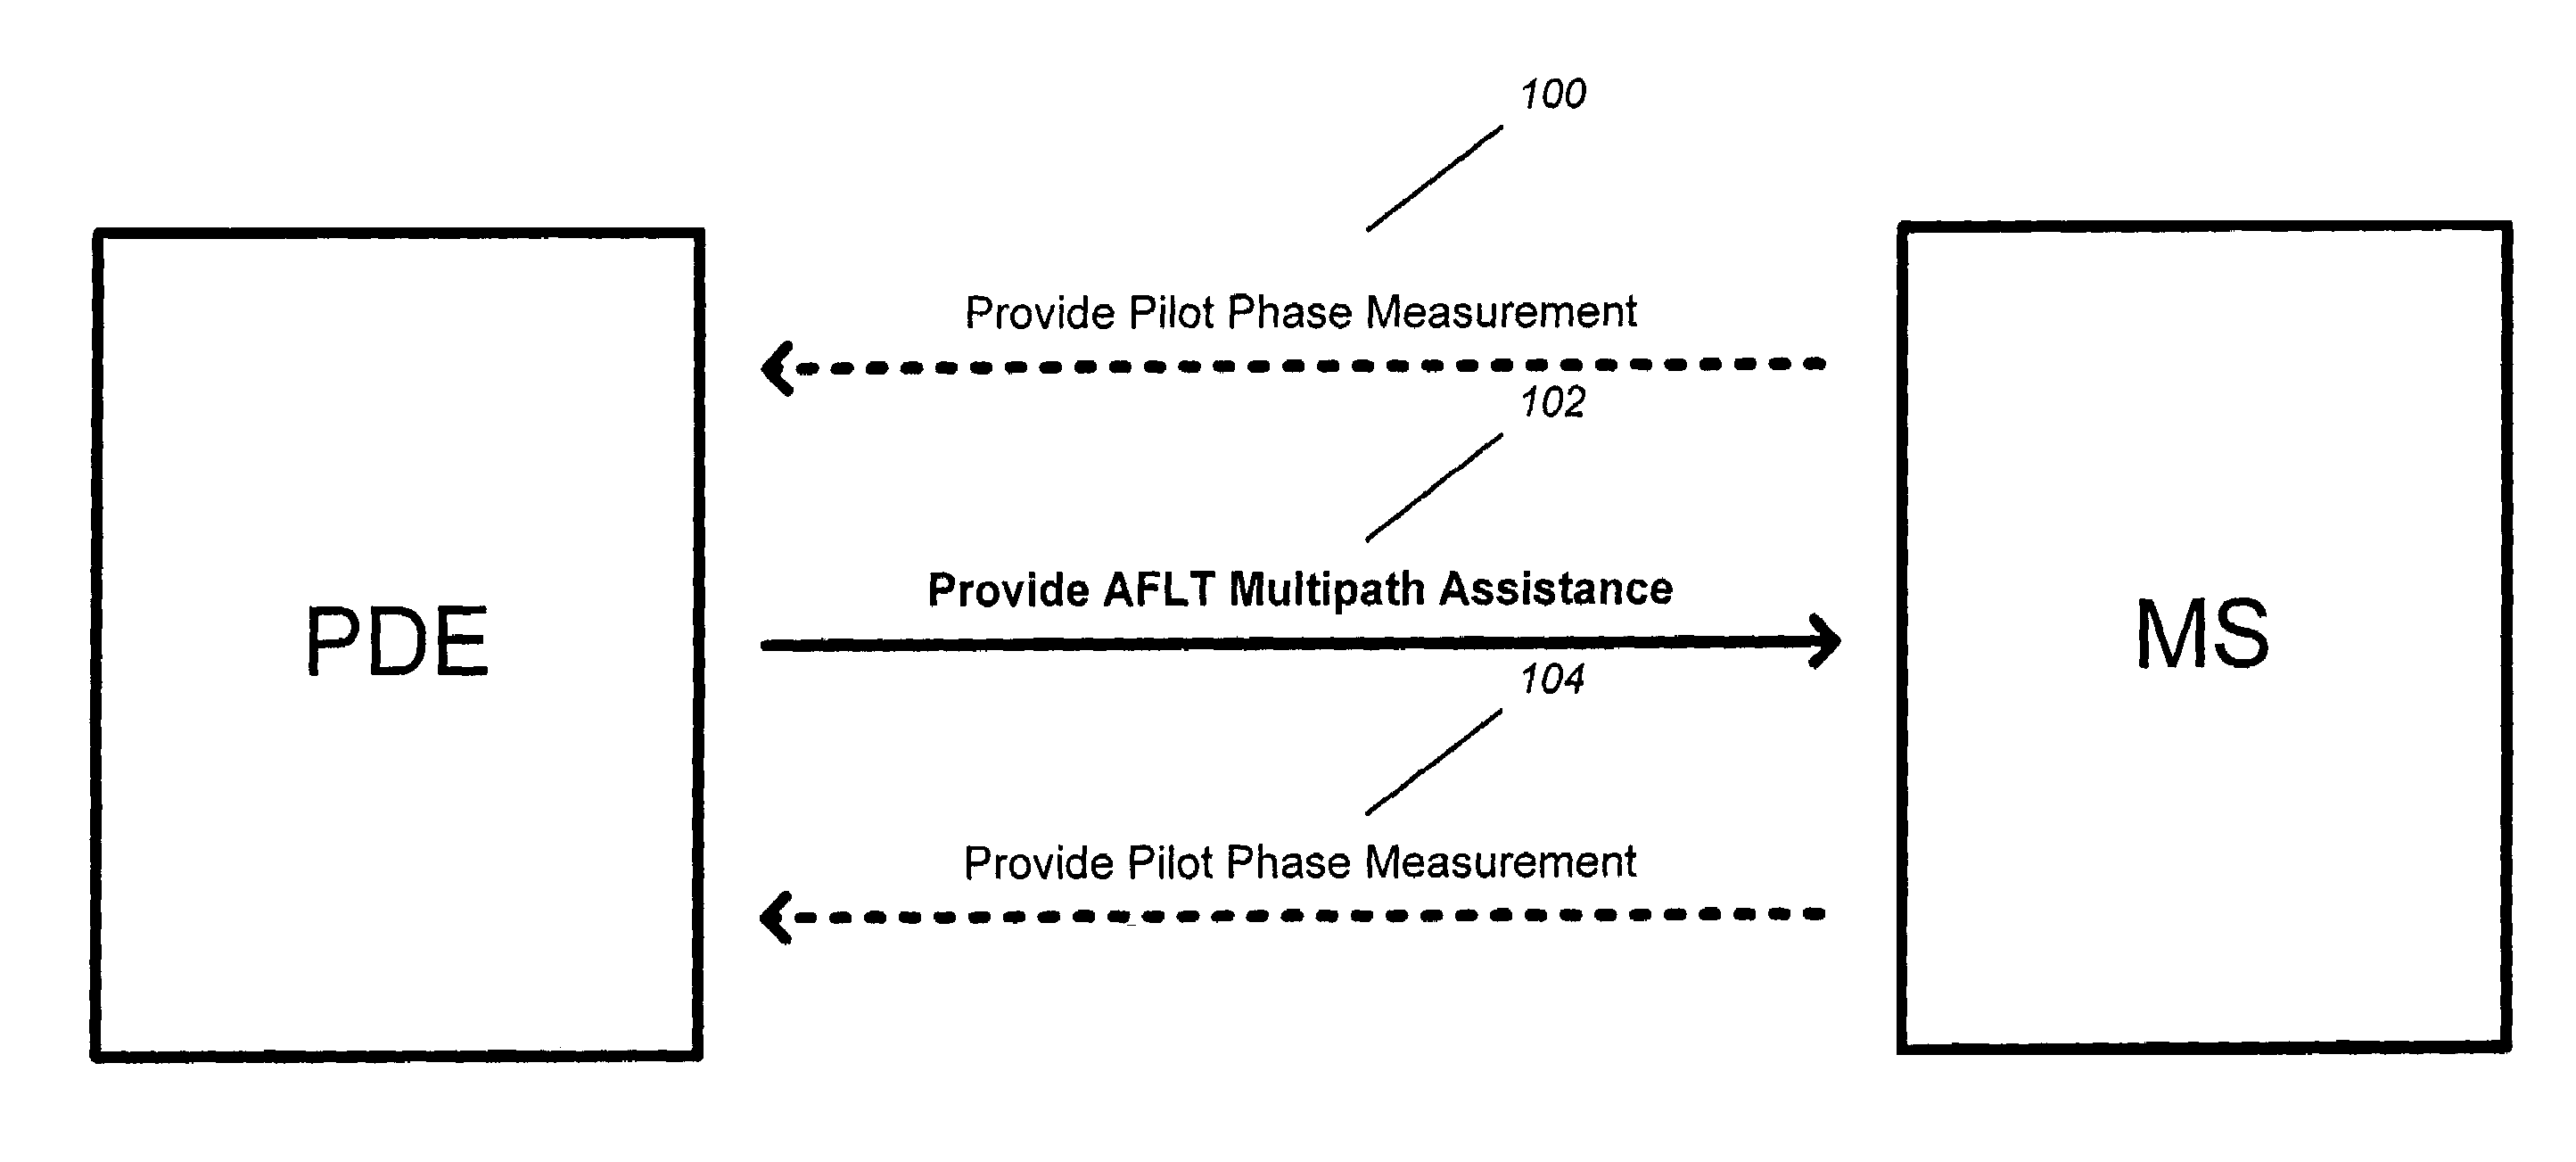 Multipath assistance for pilot phase measurement processes